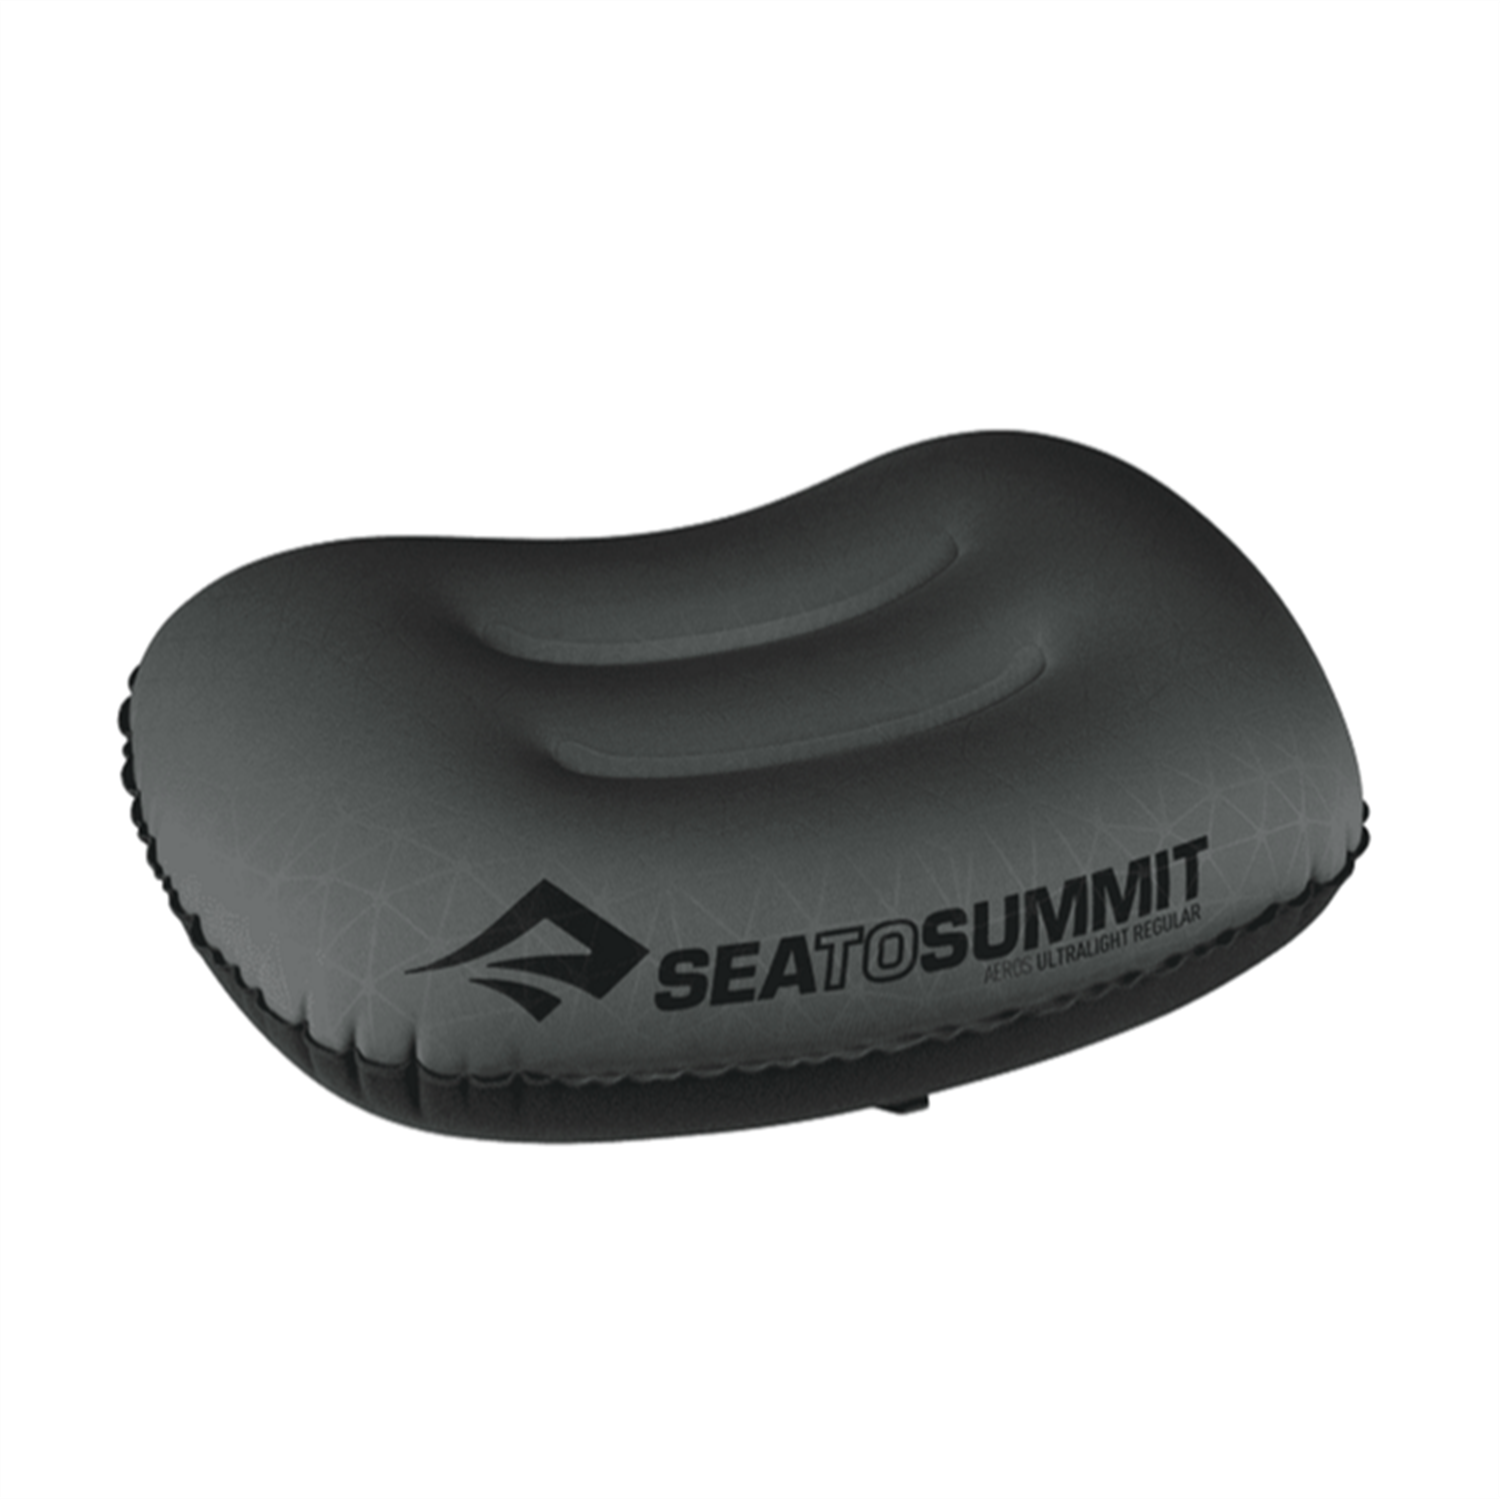 Sea to Summit Sea To Summit Aeros Ultralight Pillow